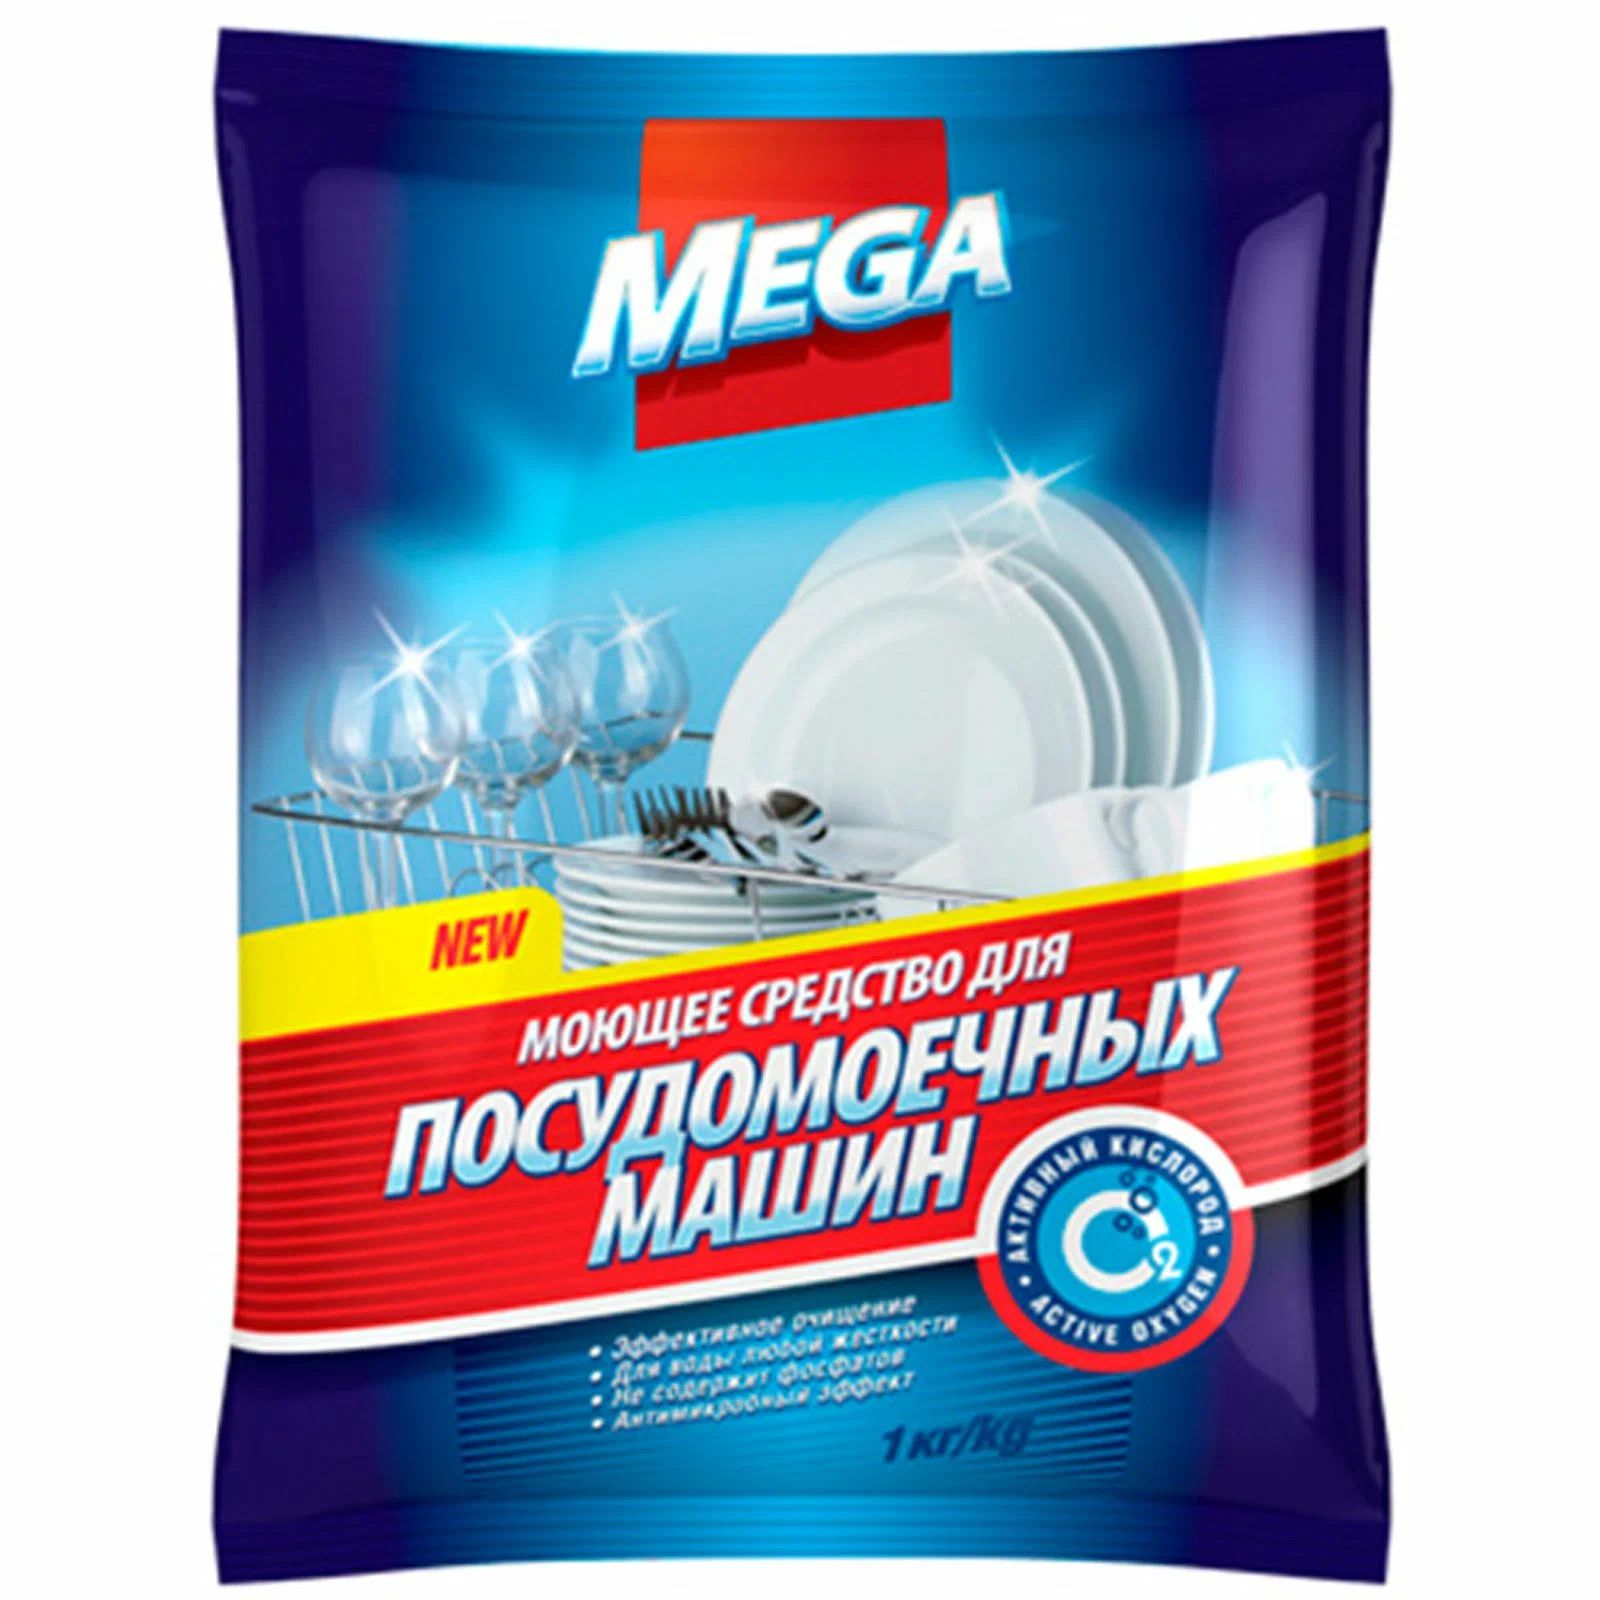 Моющее средство для посудомоечных машин Золушка MEGA, пакет, 1кг моющее средство для посудомоечных машин золушка mega пакет 1кг